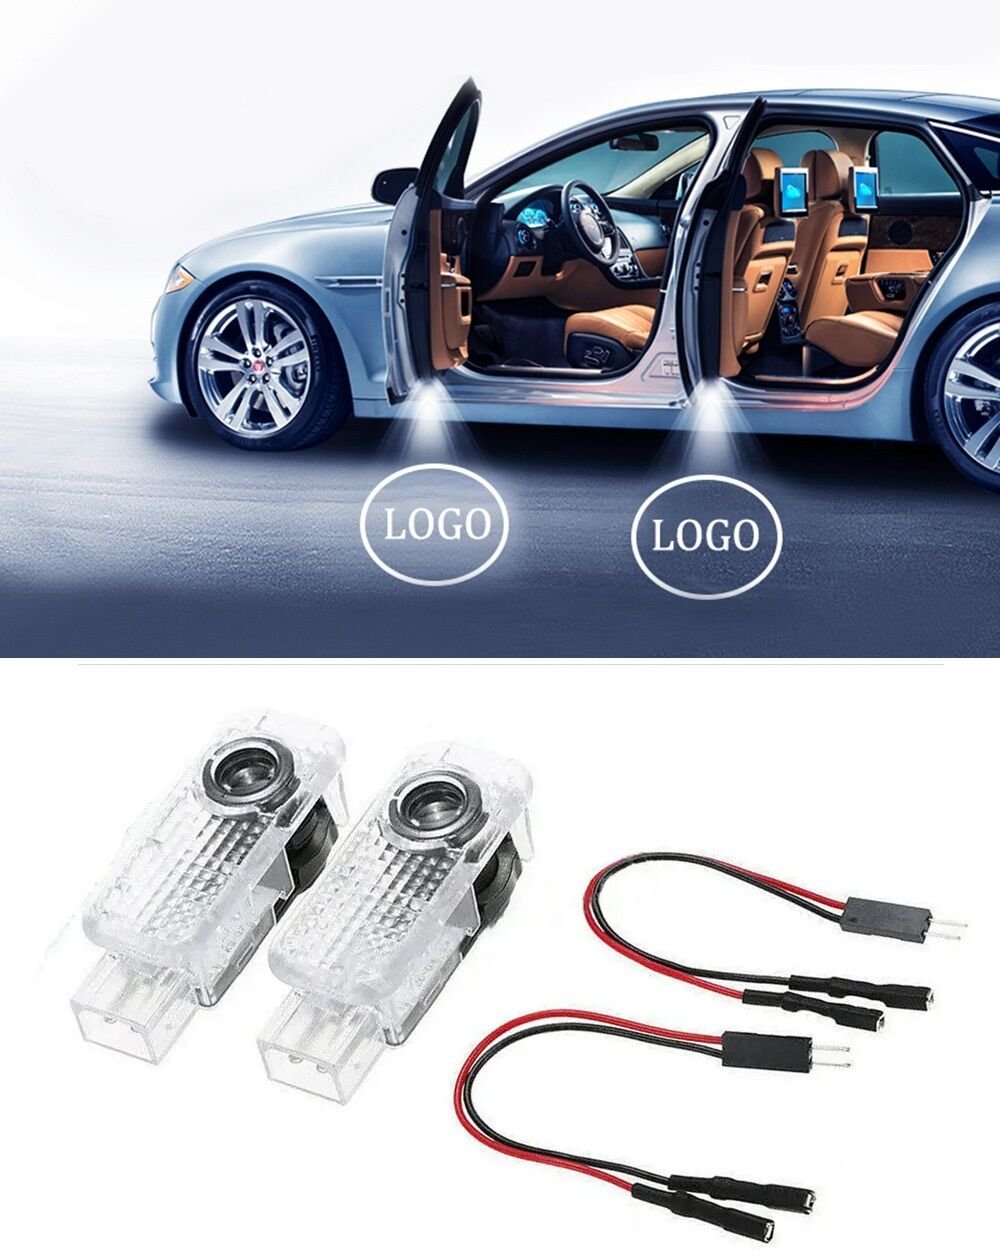 Audi q5 kapı altı ışık lazer led logo hoşgeldin aydınlatma